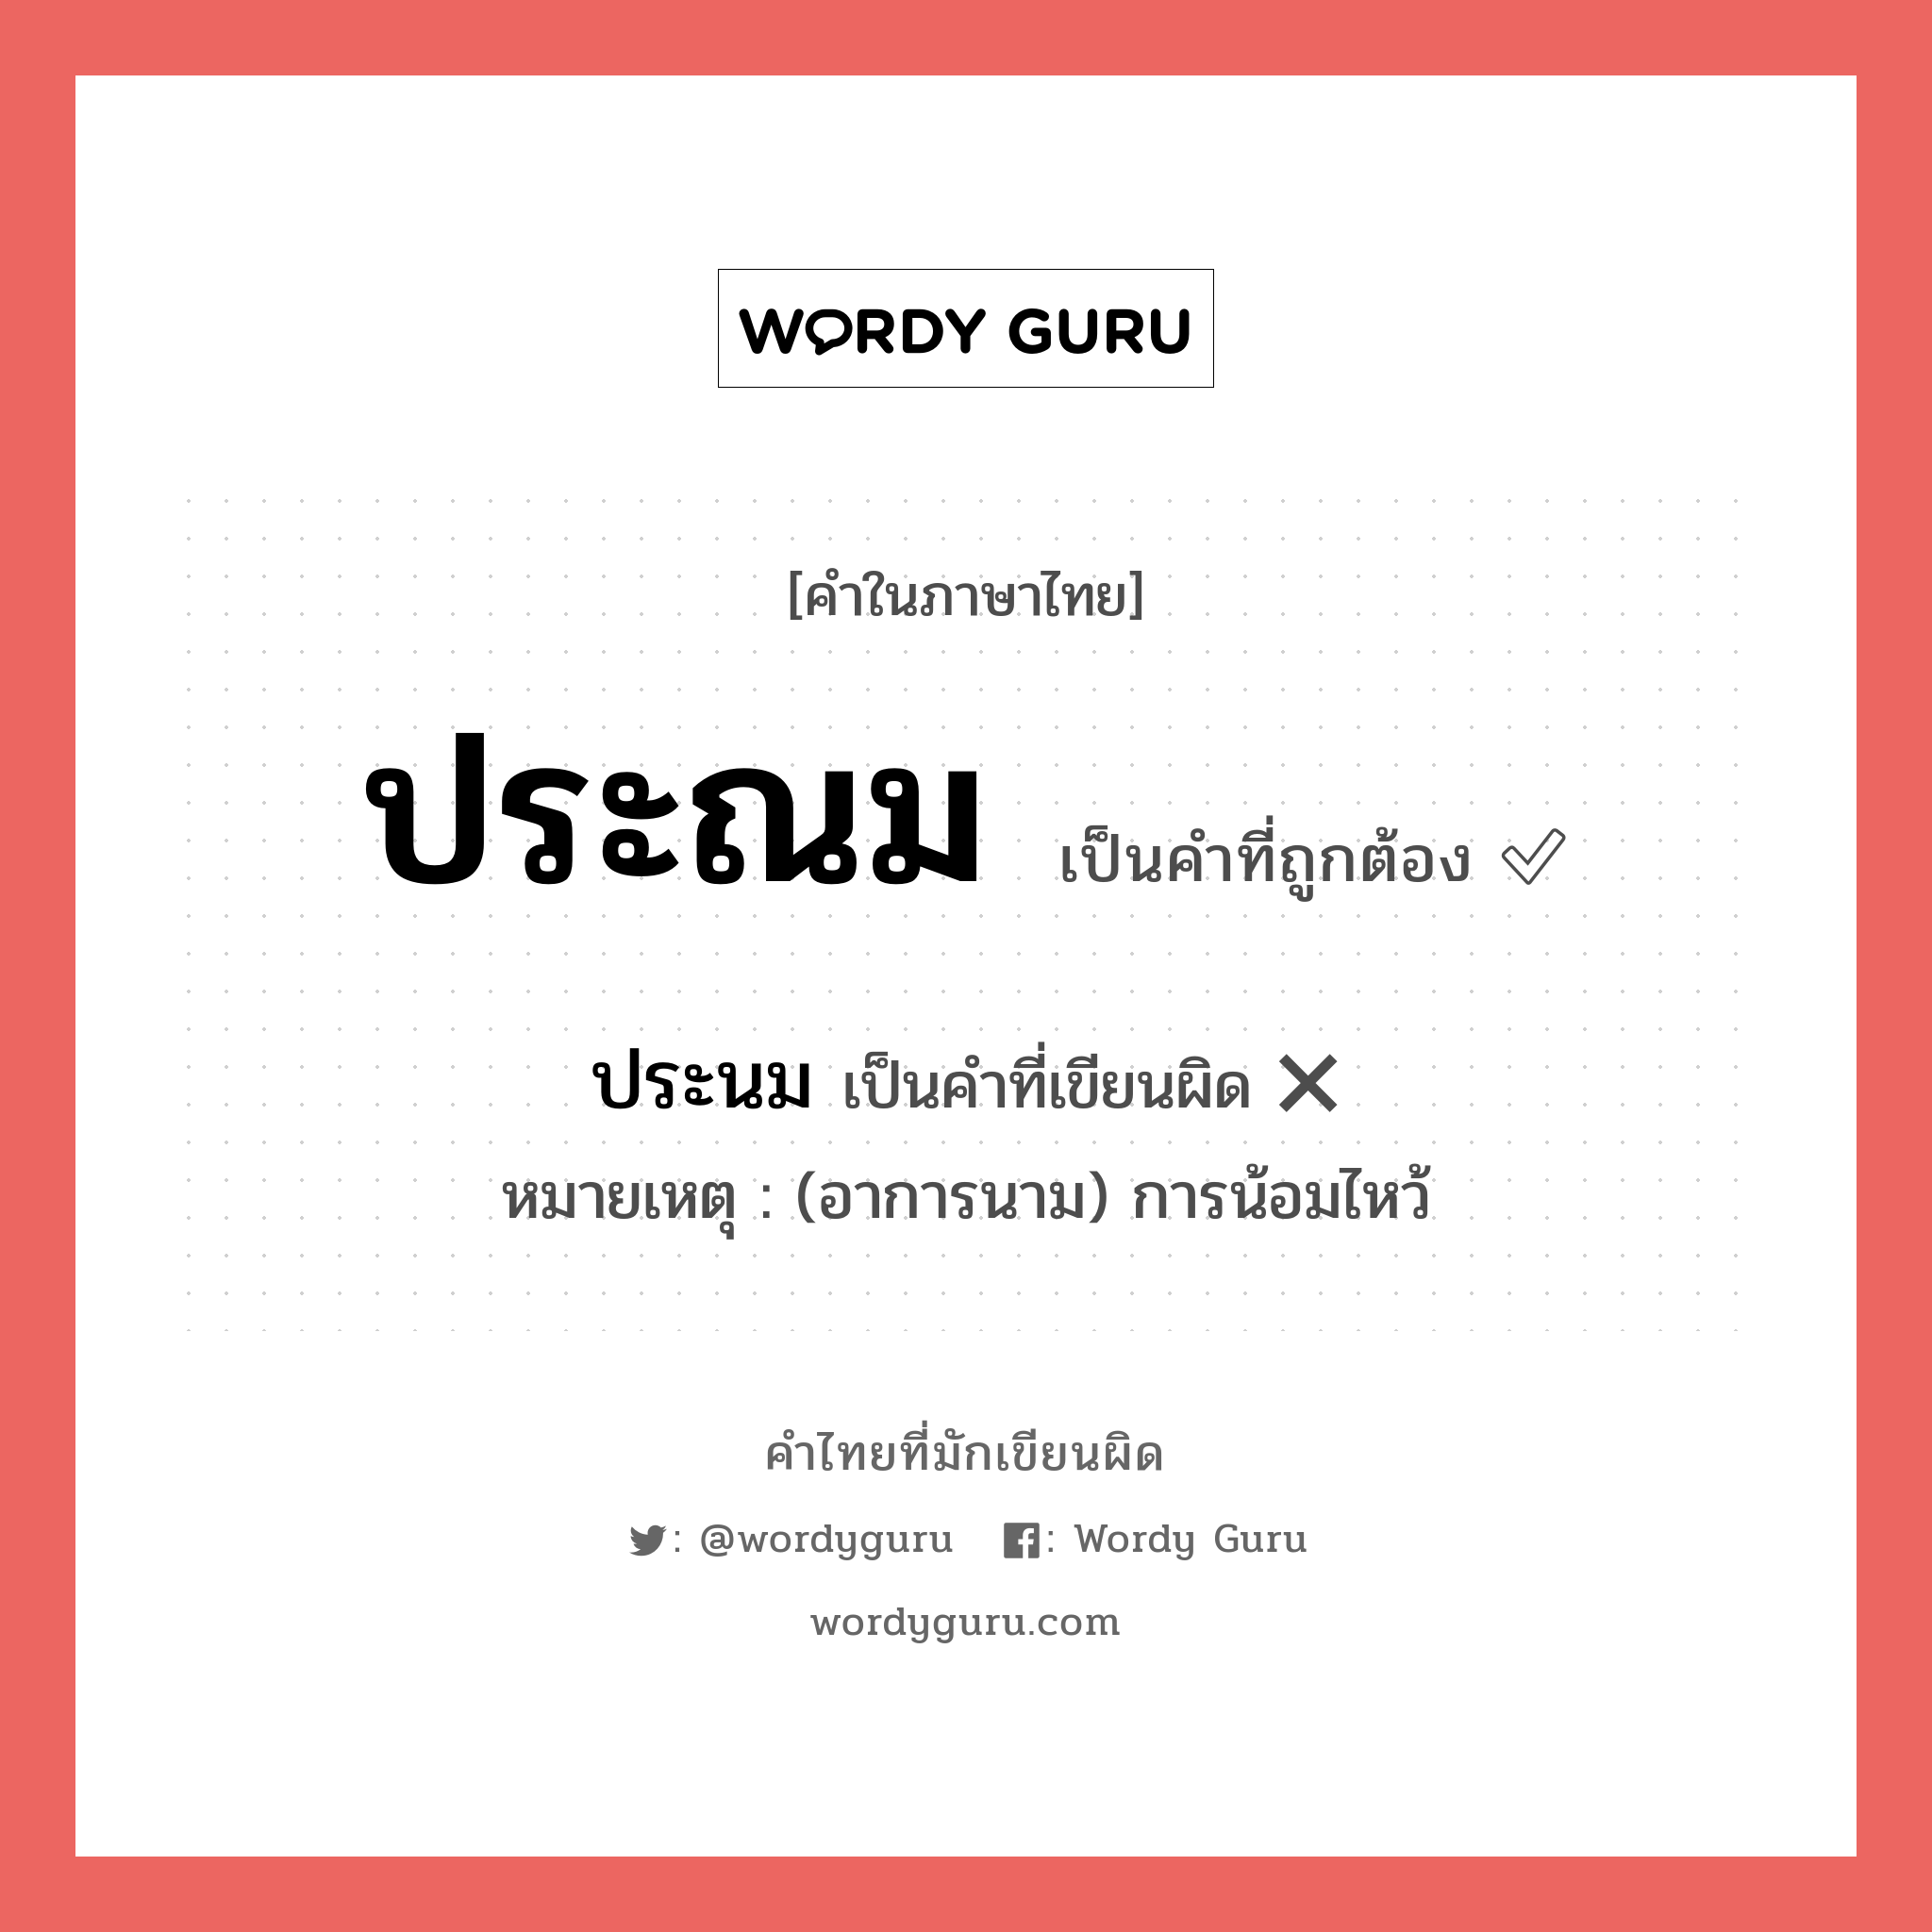 ประณม หรือ ประนม คำไหนเขียนถูก?, คำในภาษาไทยที่มักเขียนผิด ประณม คำที่ผิด ❌ ประนม หมายเหตุ (อาการนาม) การน้อมไหว้